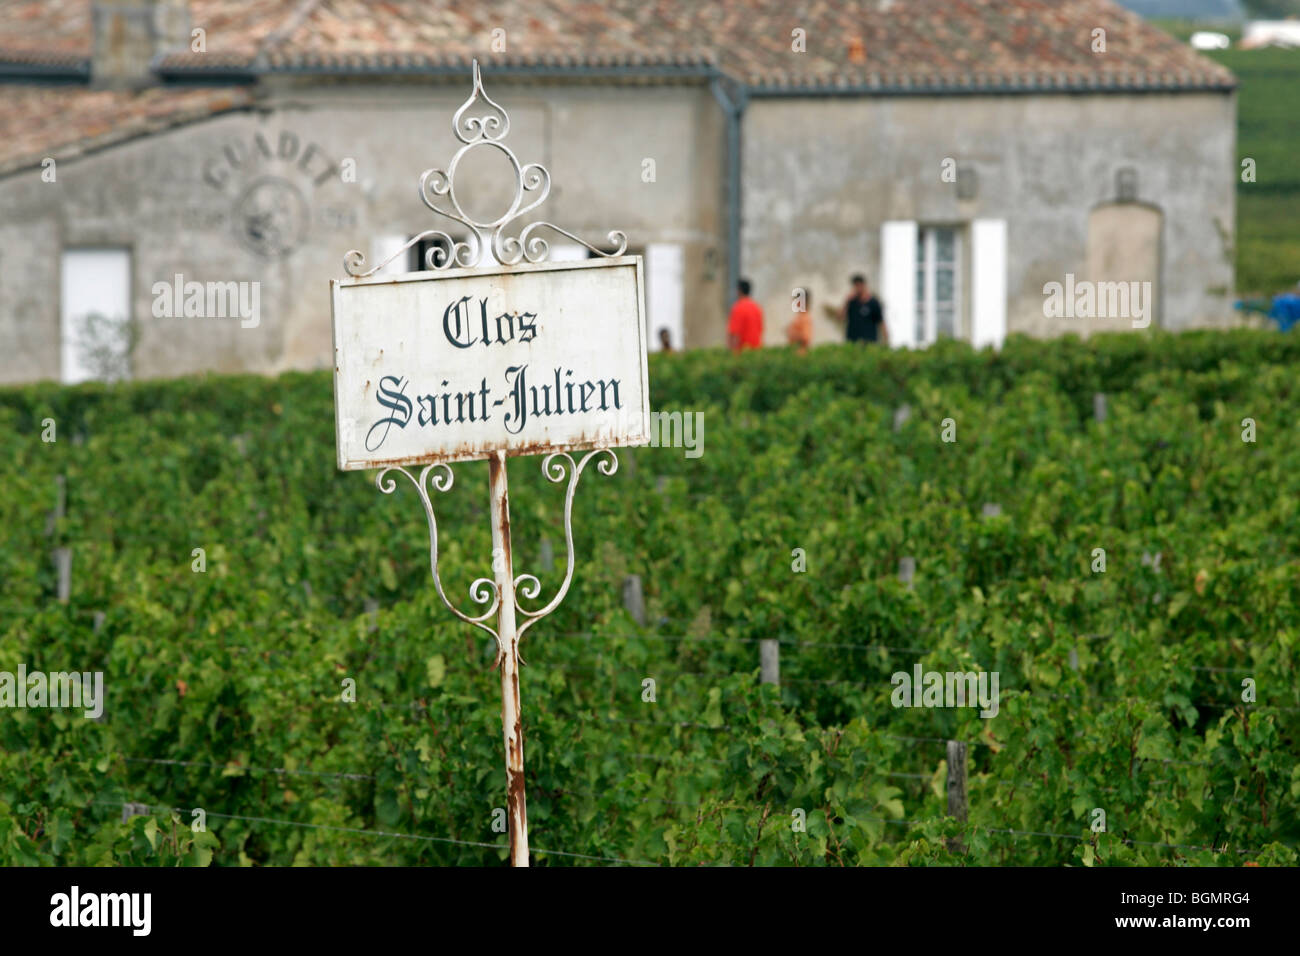 Clos St Julien sign Bordeaux vineyard town St Emilion France Stock Photo